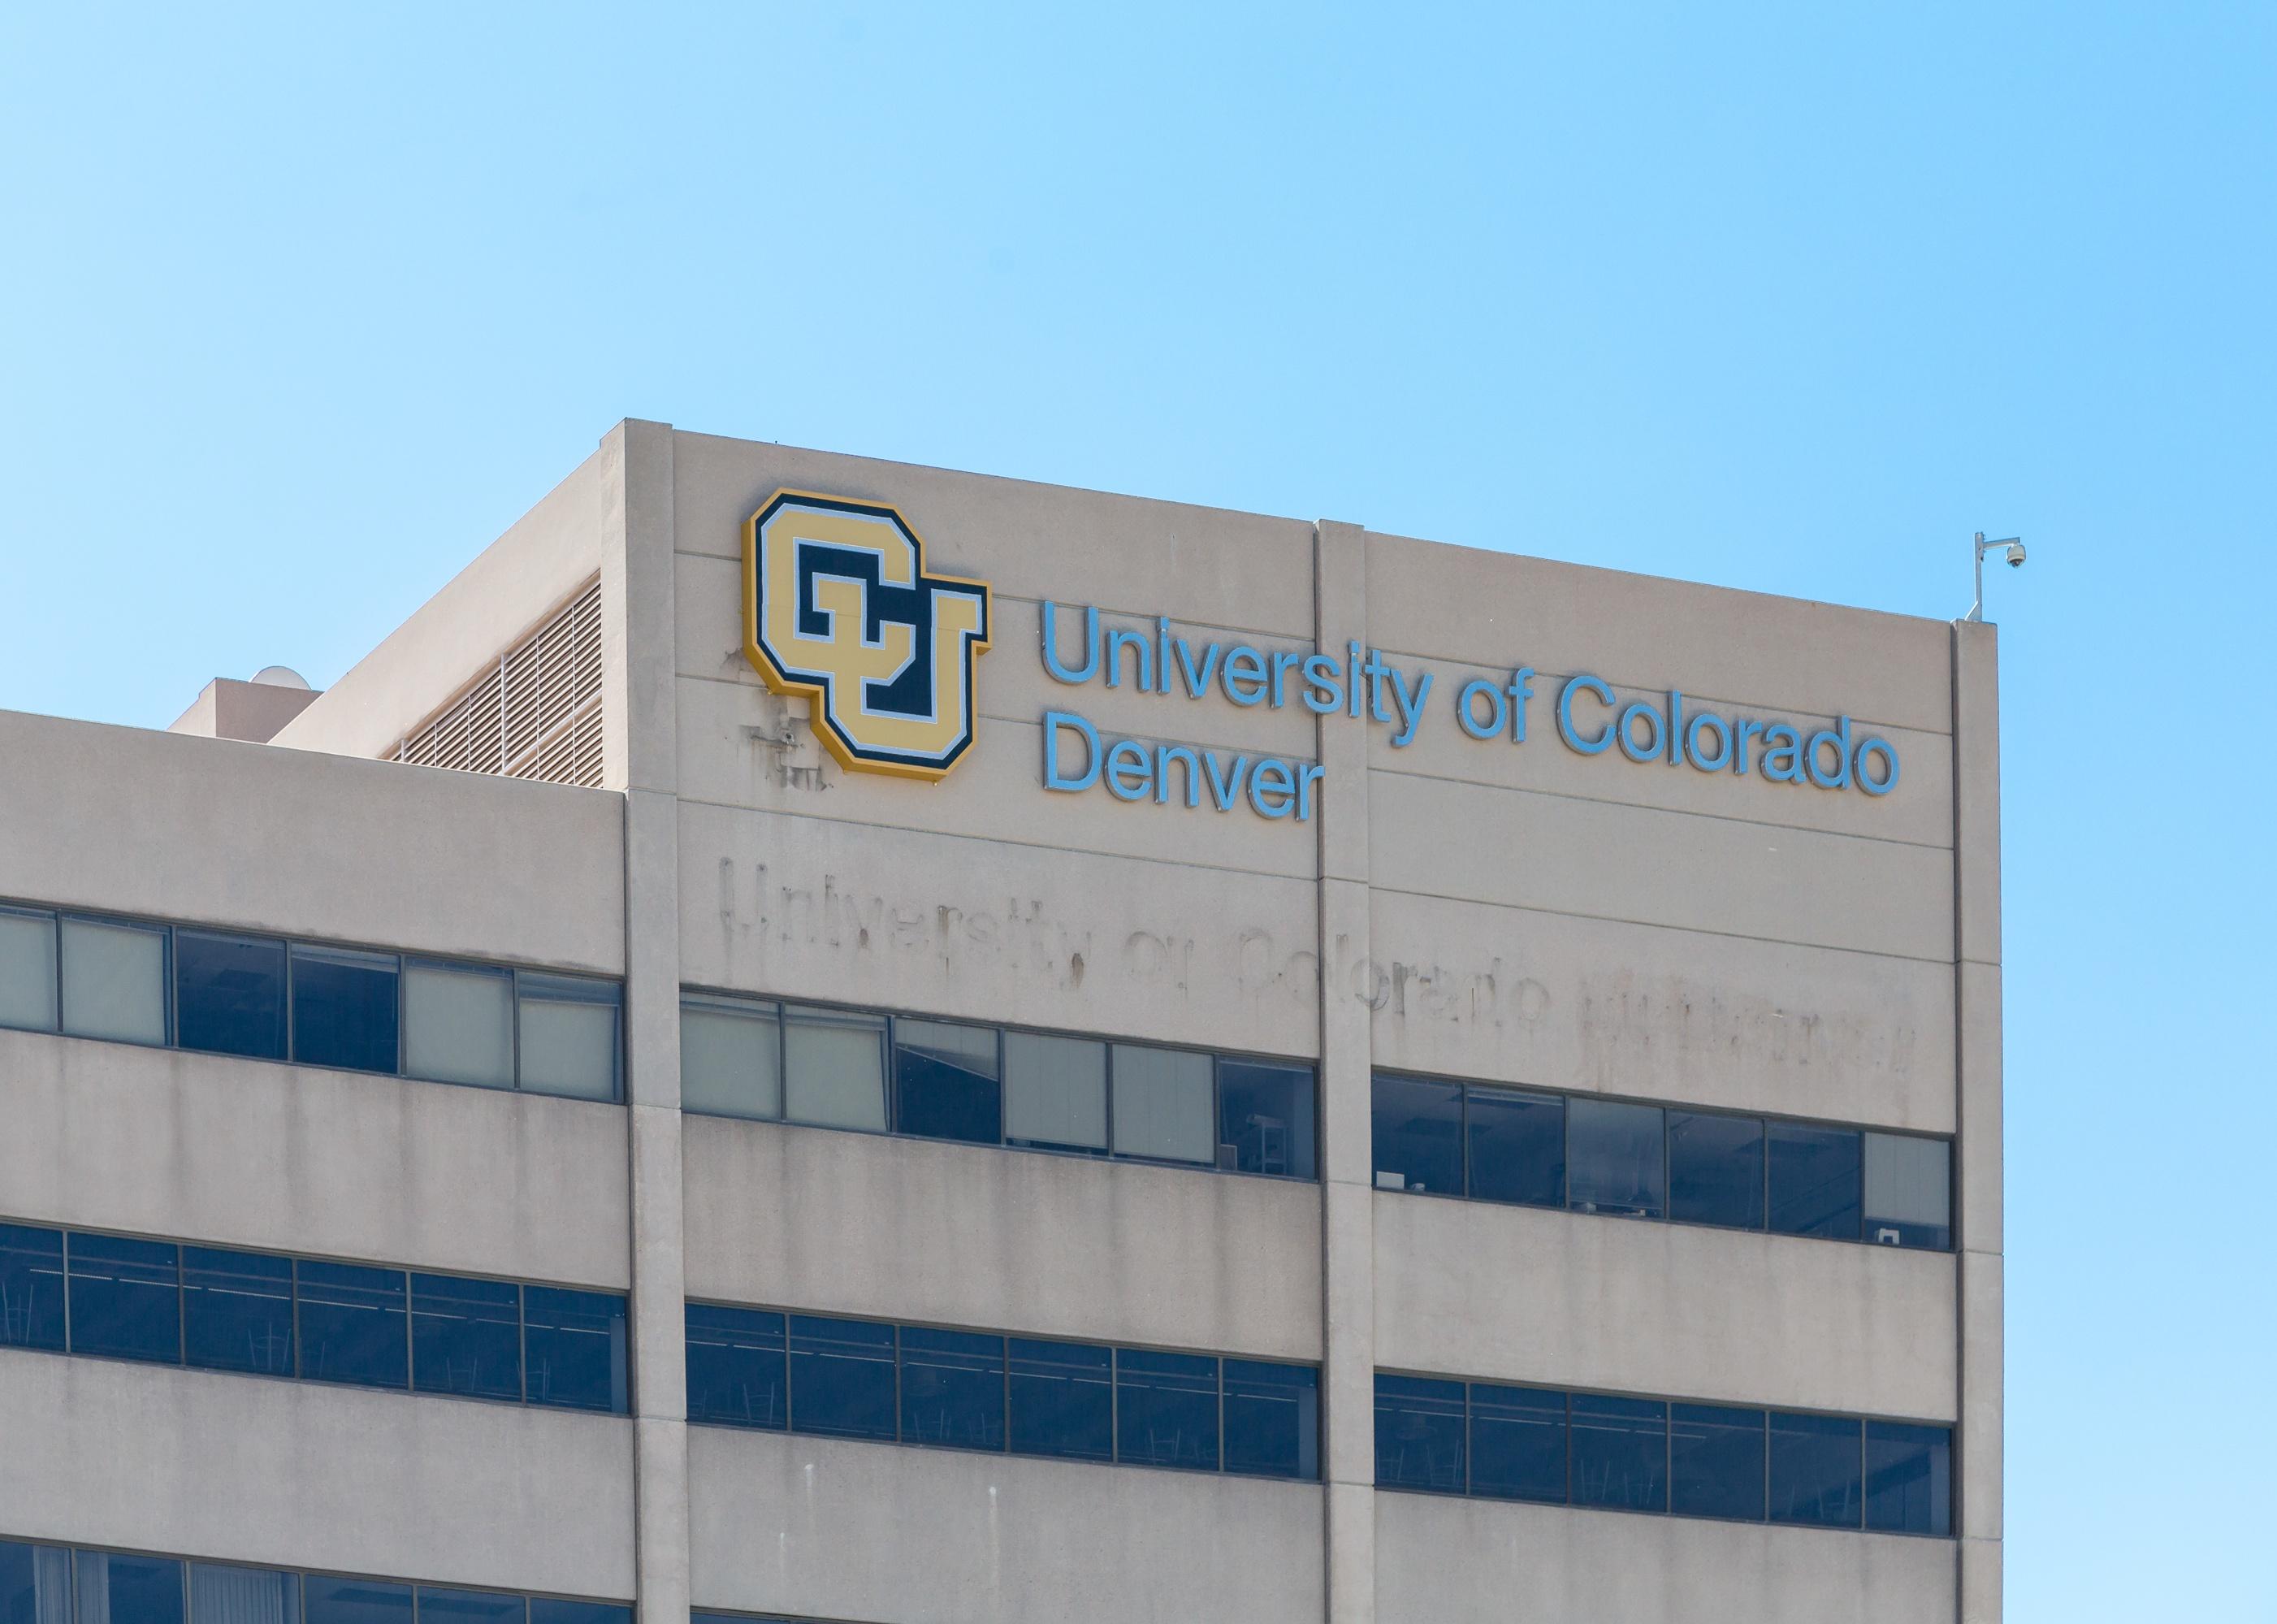 University of Colorado Denver logo on a building.